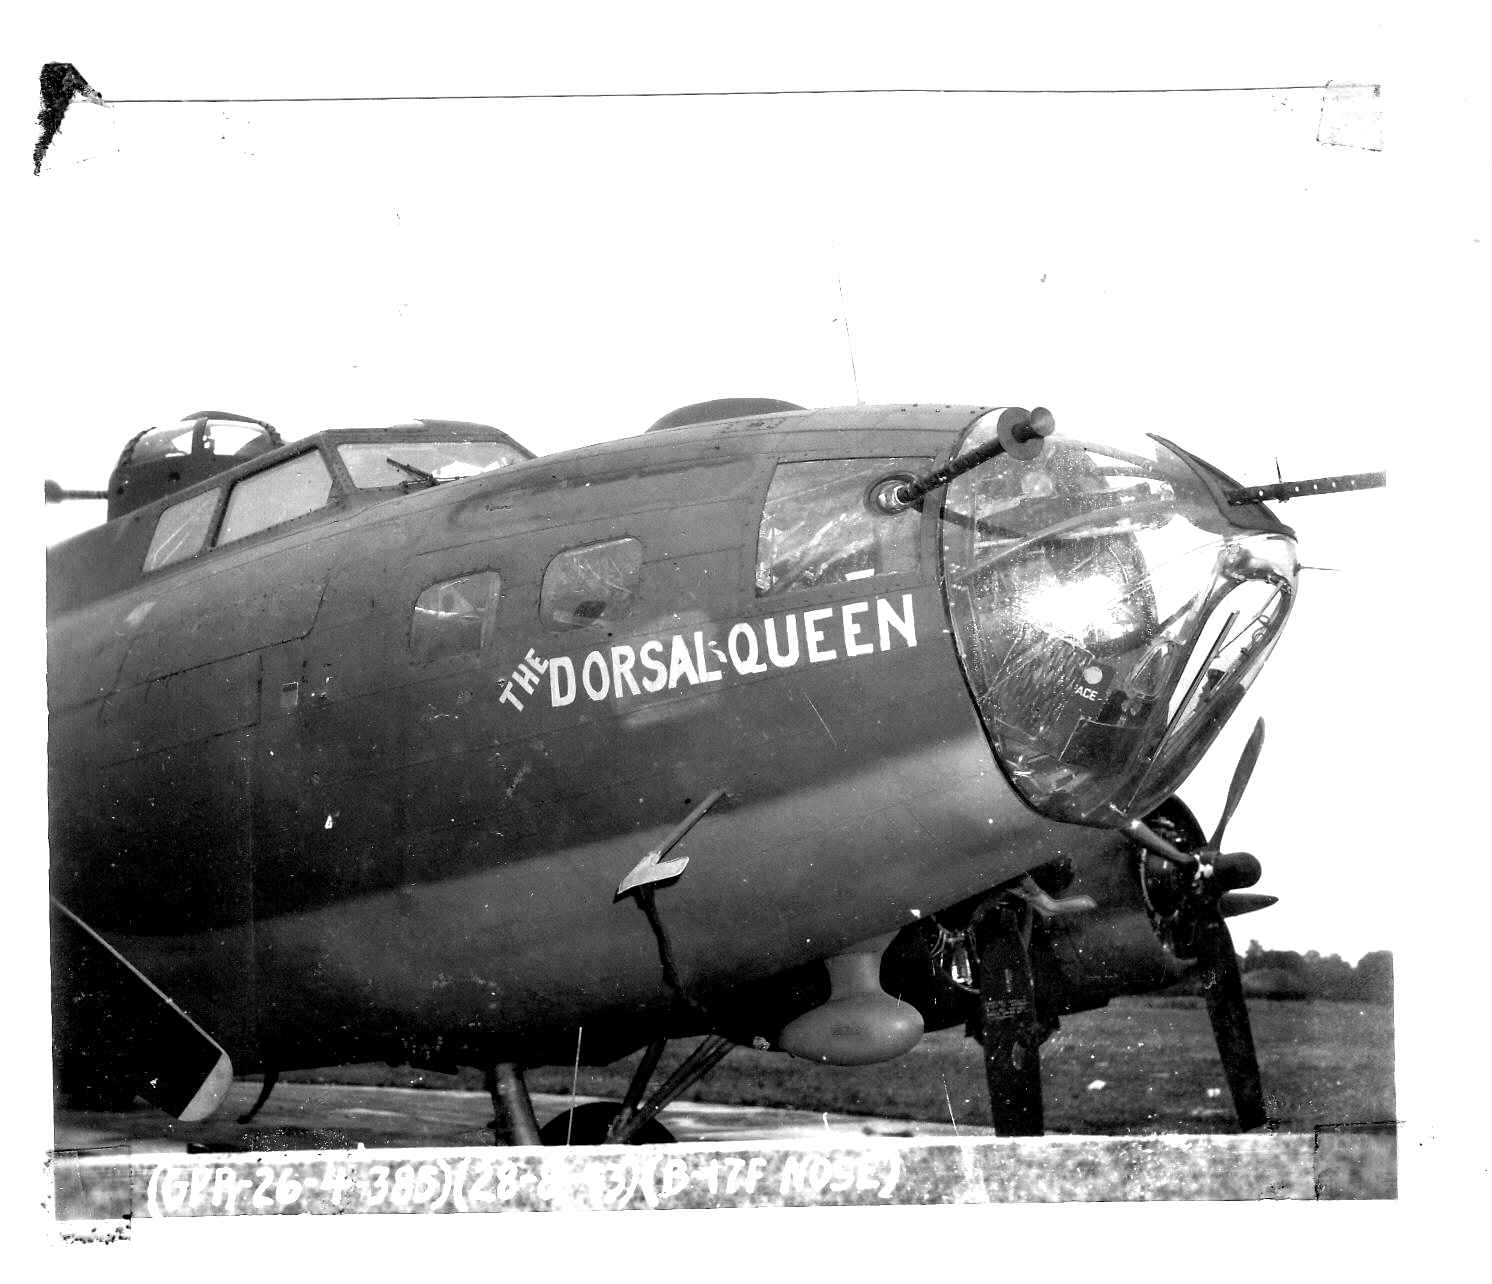 B-17 #42-30264 / Dorsal Queen